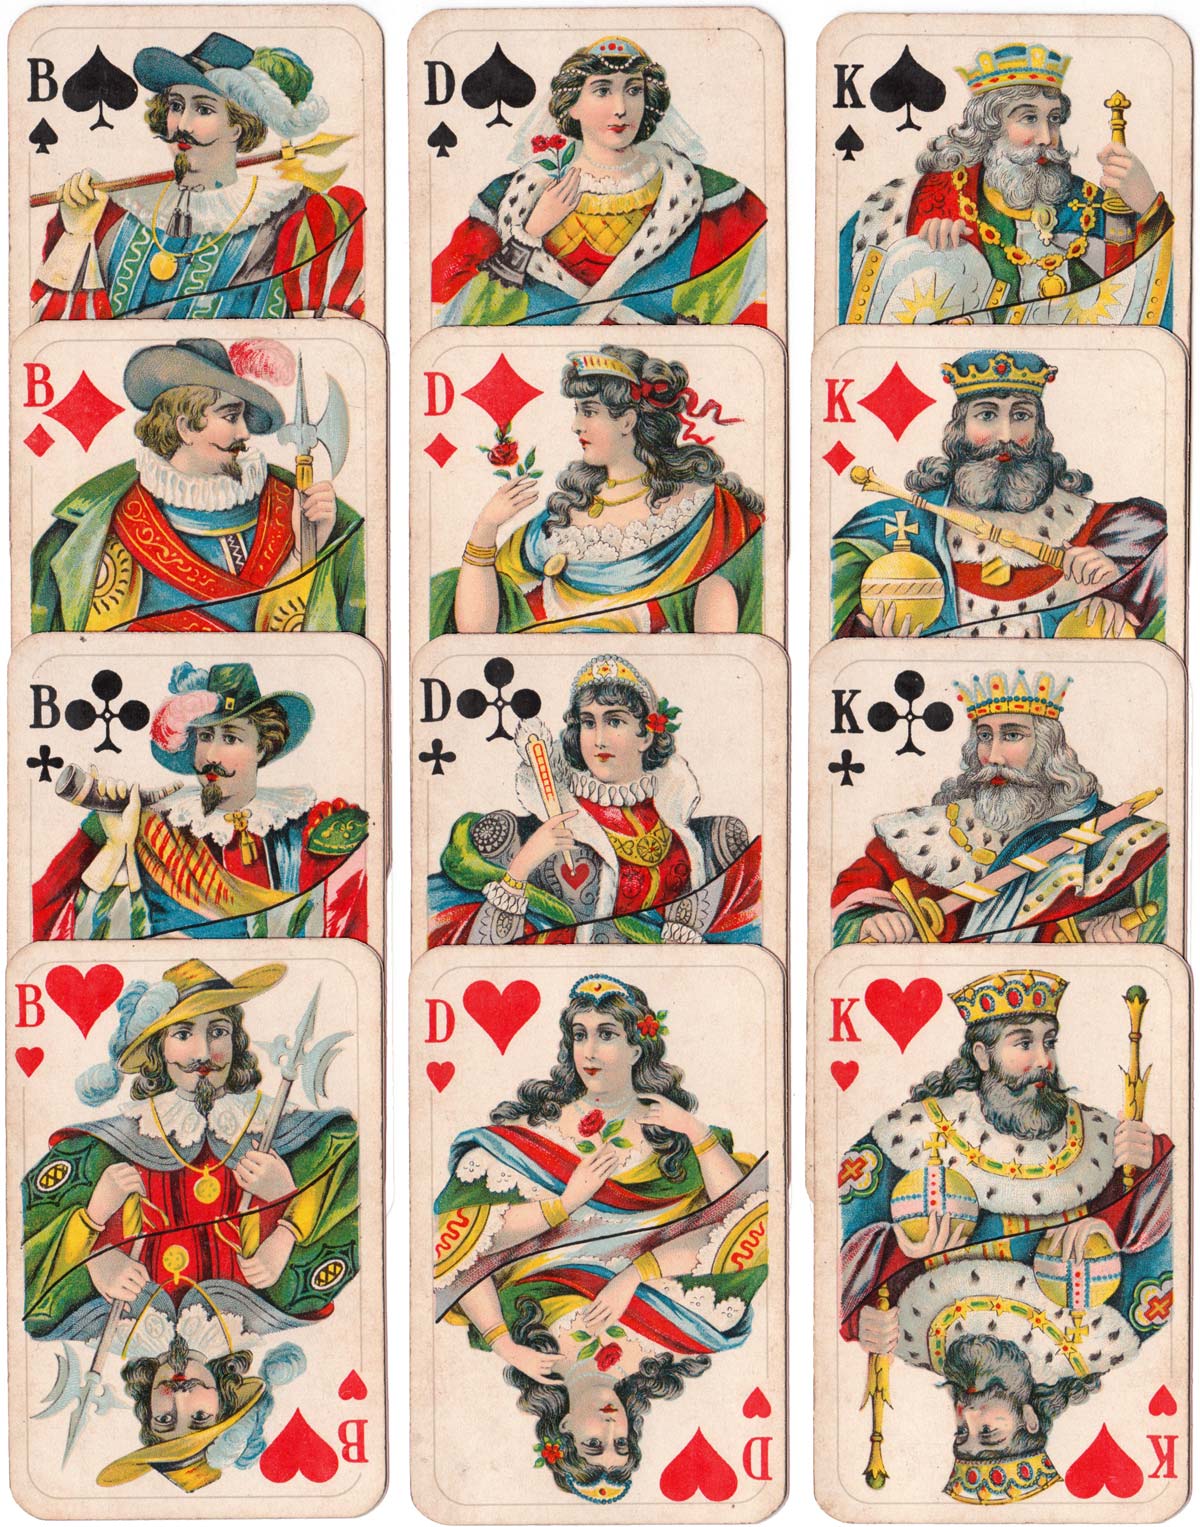 Bechstein designs printed by Vereinigte Stralsunder Spielkartenfabriken AG former Schneider & Co., c1925